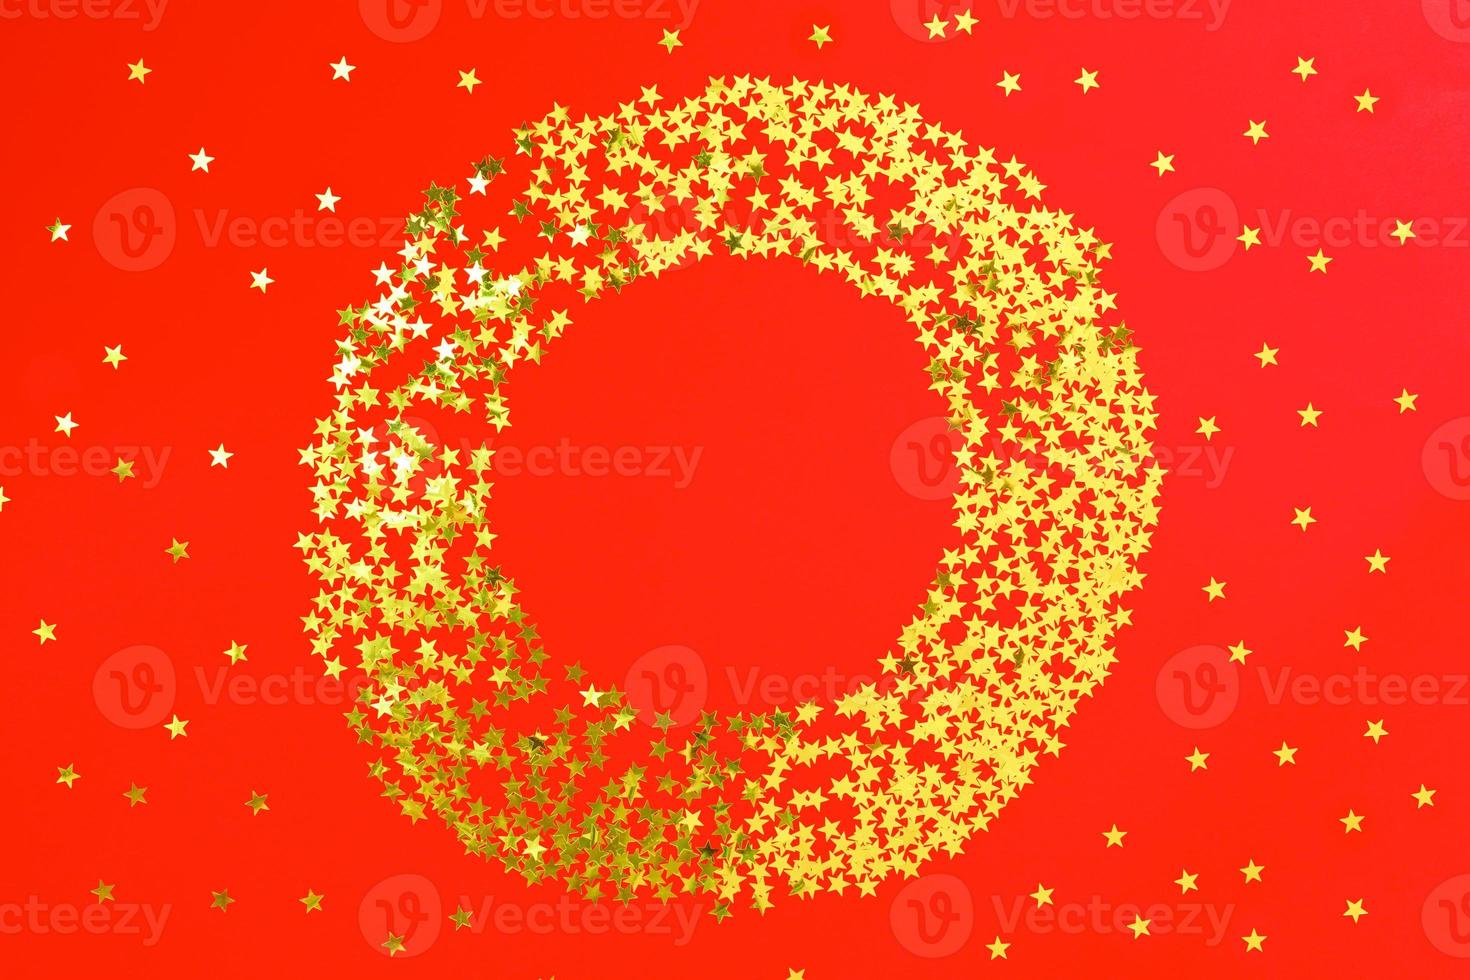 toile de fond rouge avec des confettis de paillettes et d'étoiles dorées en cercle. fond clair de vacances festives photo